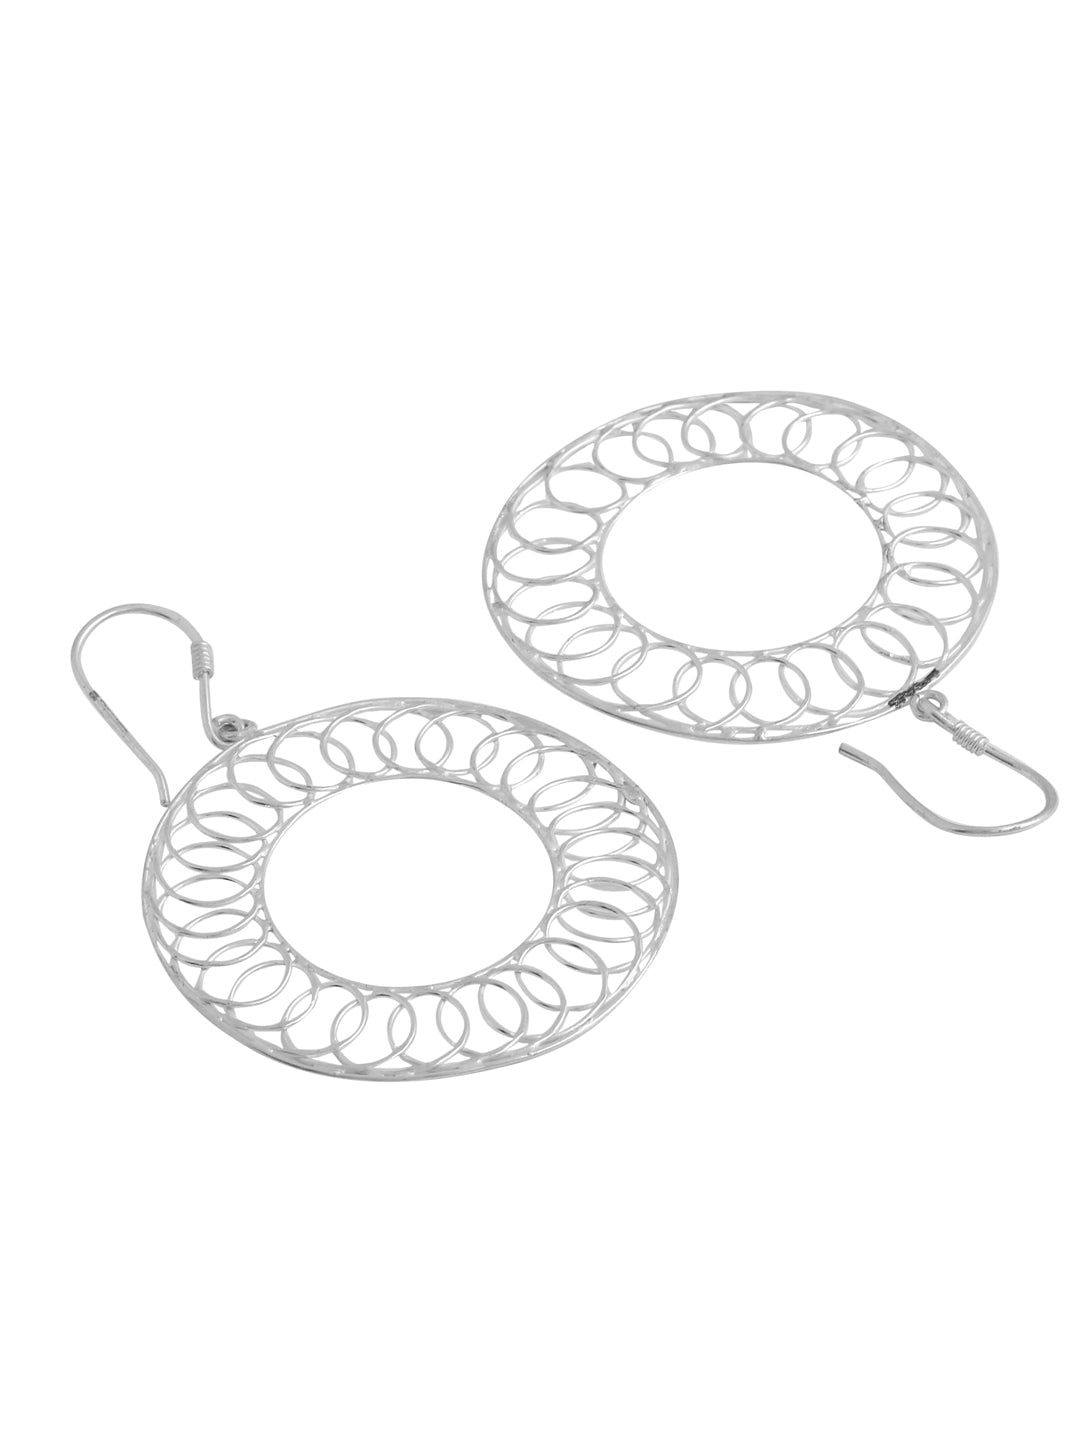 Artisanal Round Wire Weave Earrings